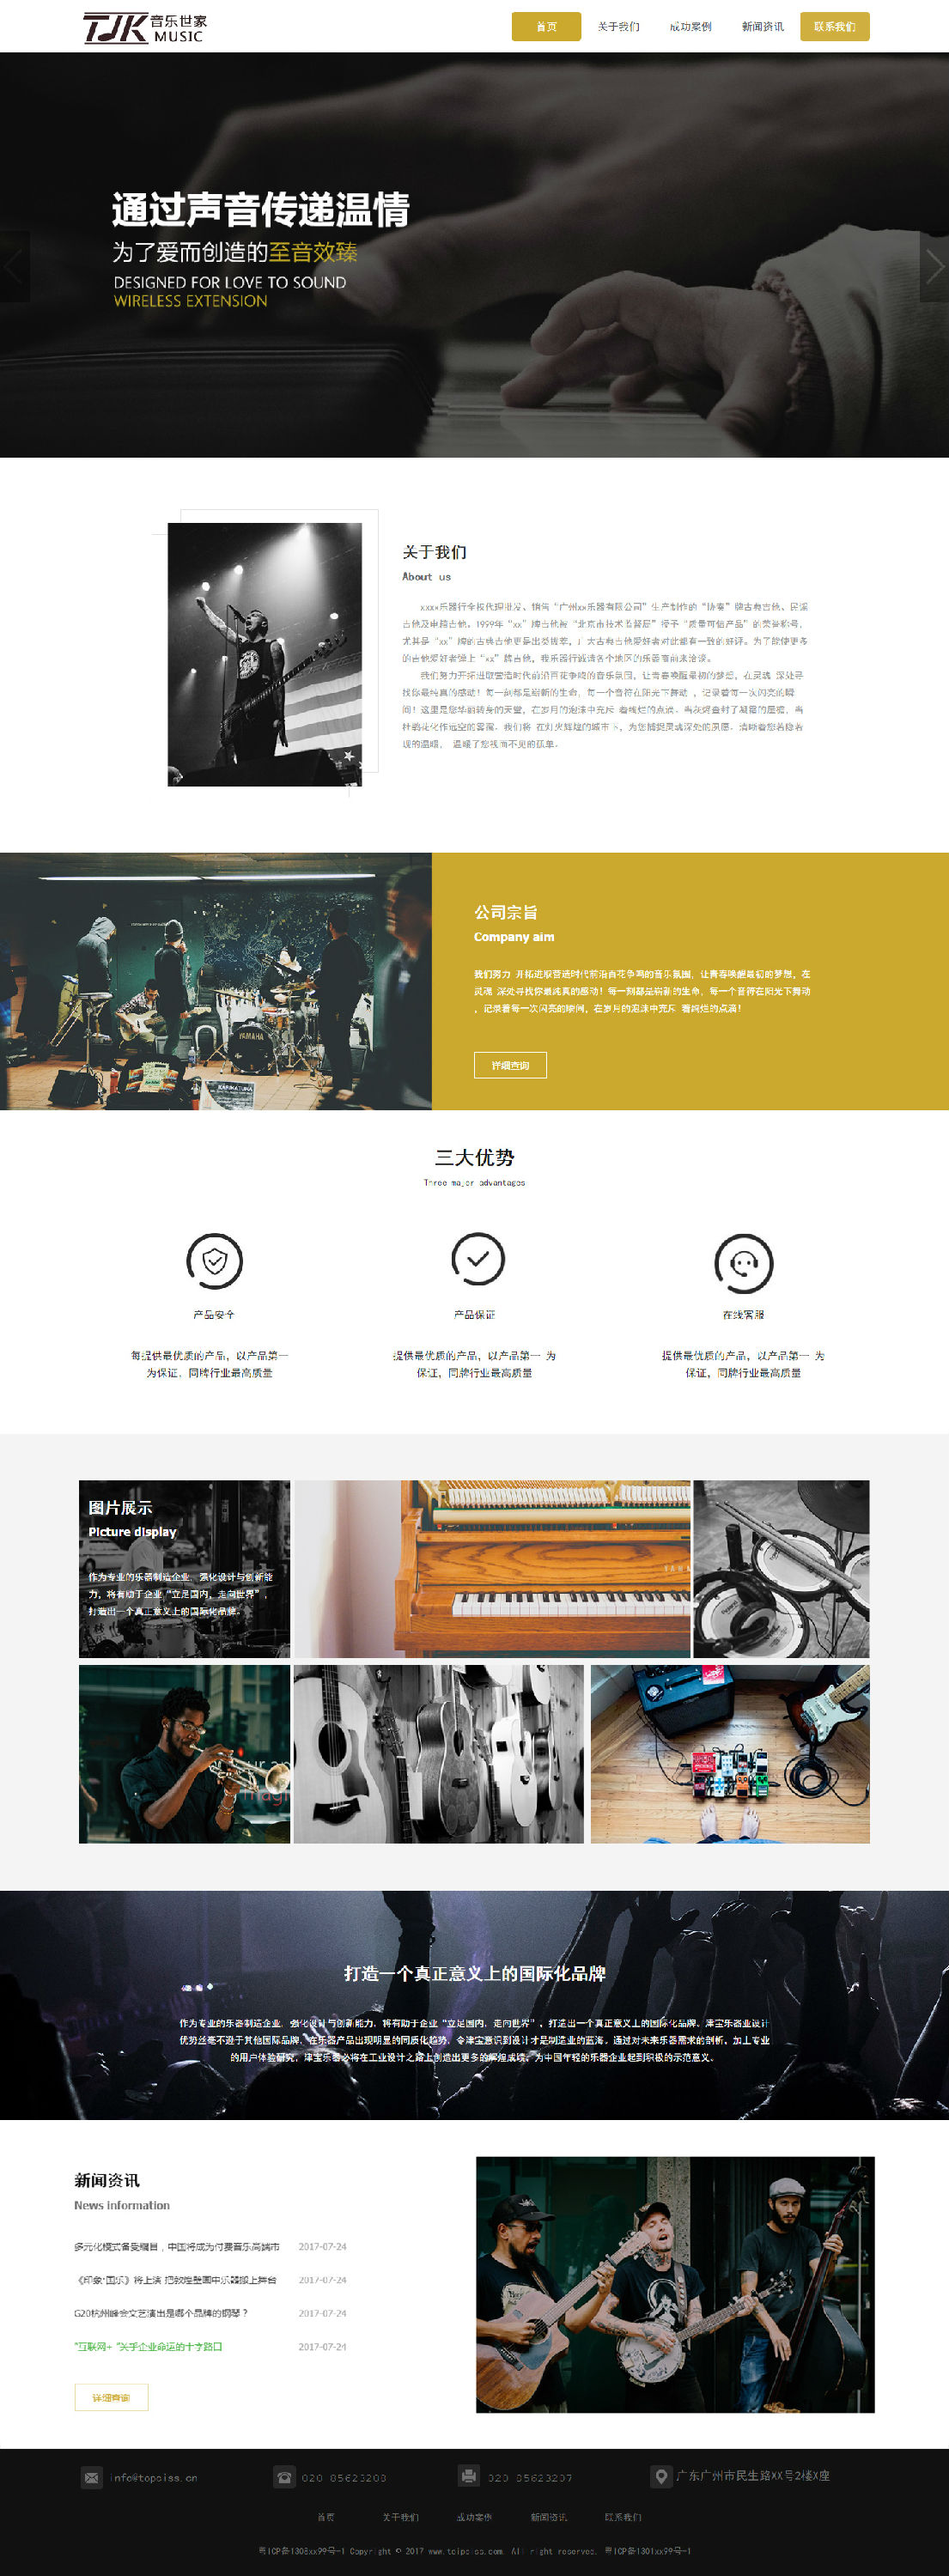 乐器行业展示型网站